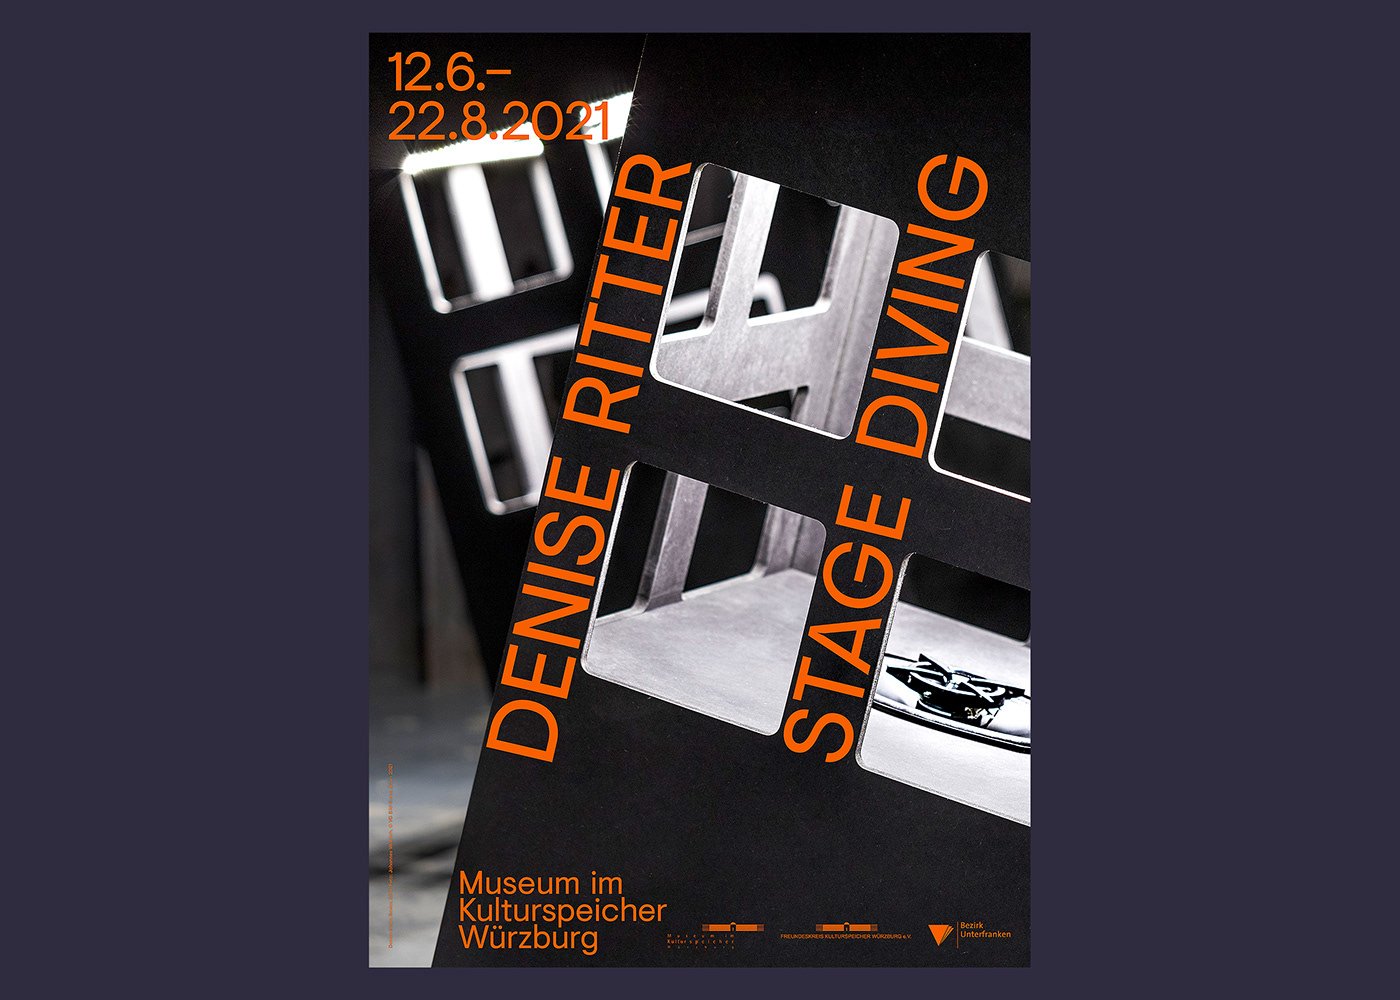 affichen denise ritter Exhibition  grafik Kulturspeicher plakat poster Stage typography   würzburg